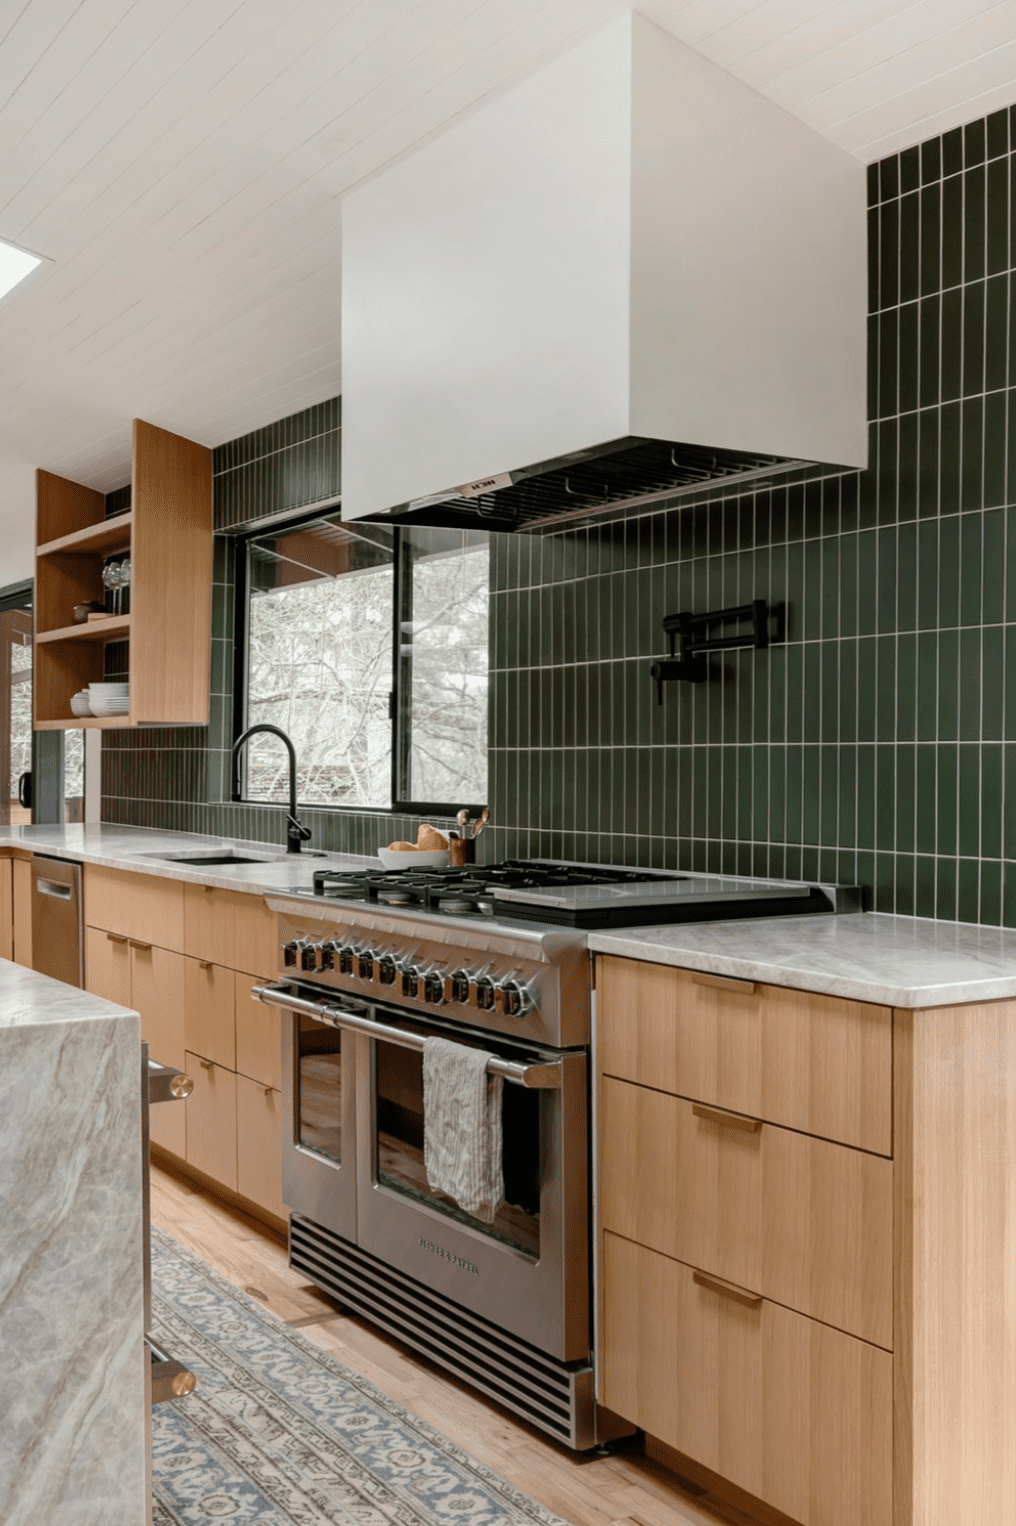 Mur de carrelage vert dans une cuisine avec des armoires en bois